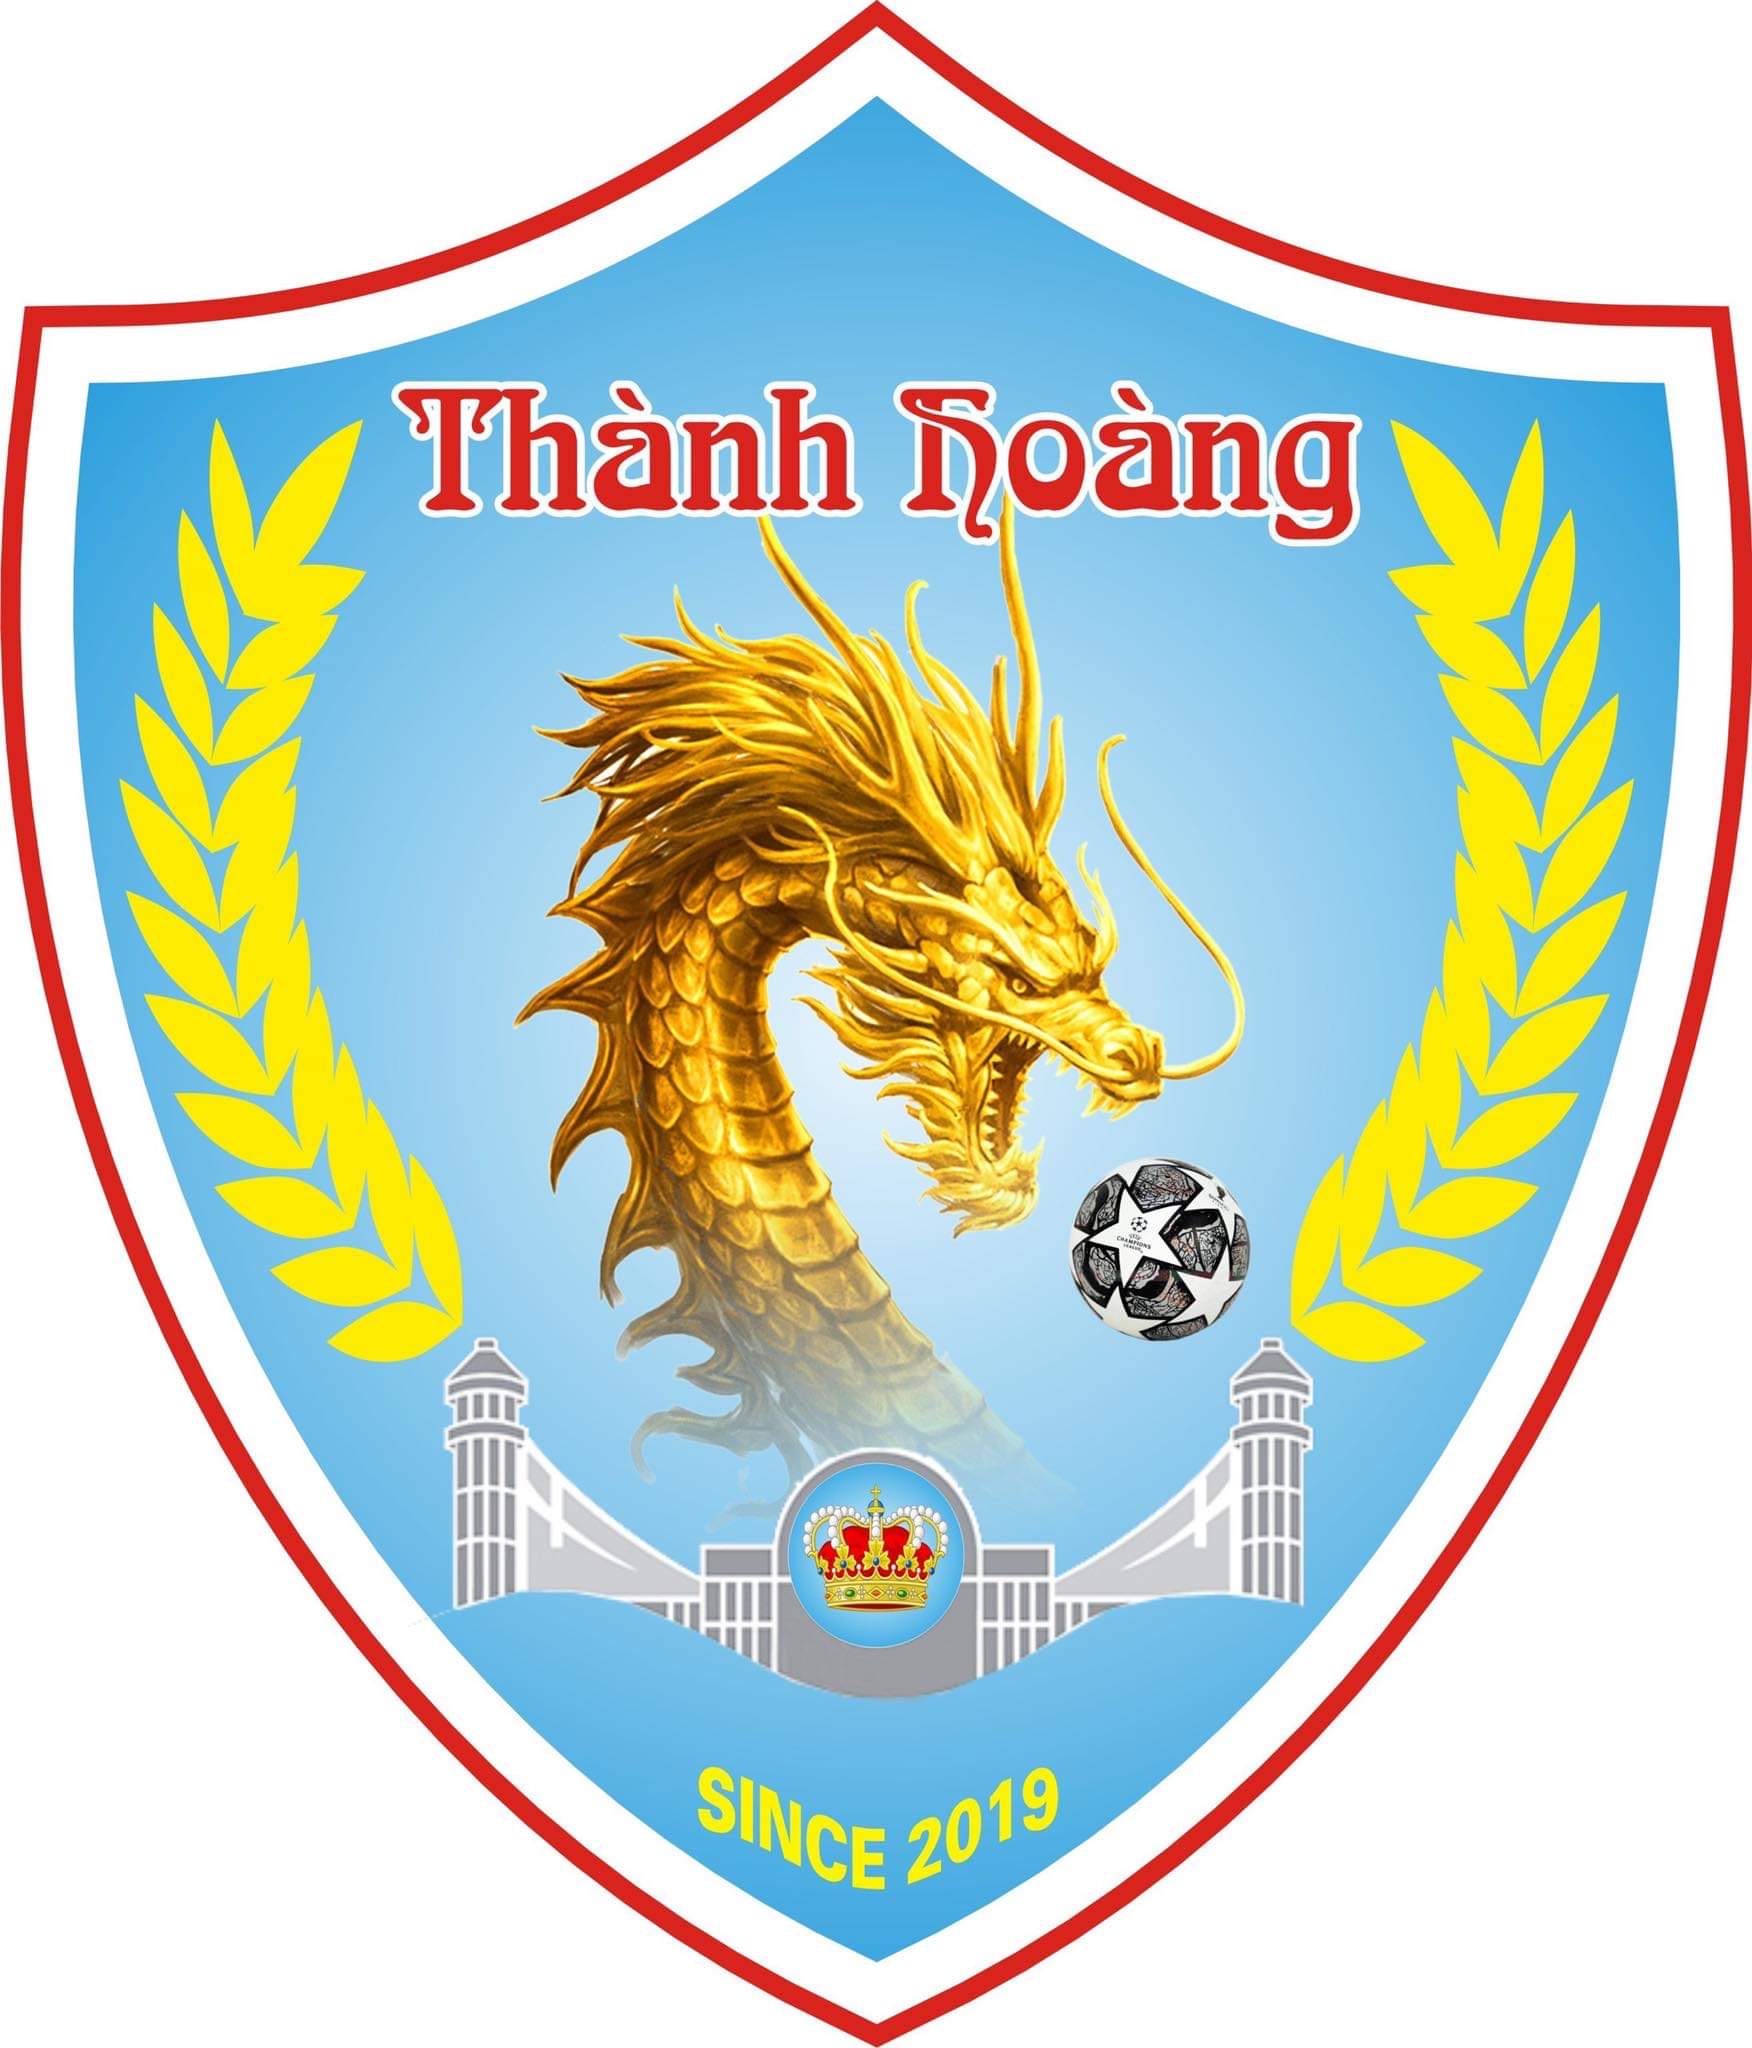 FC Thành Hoàng